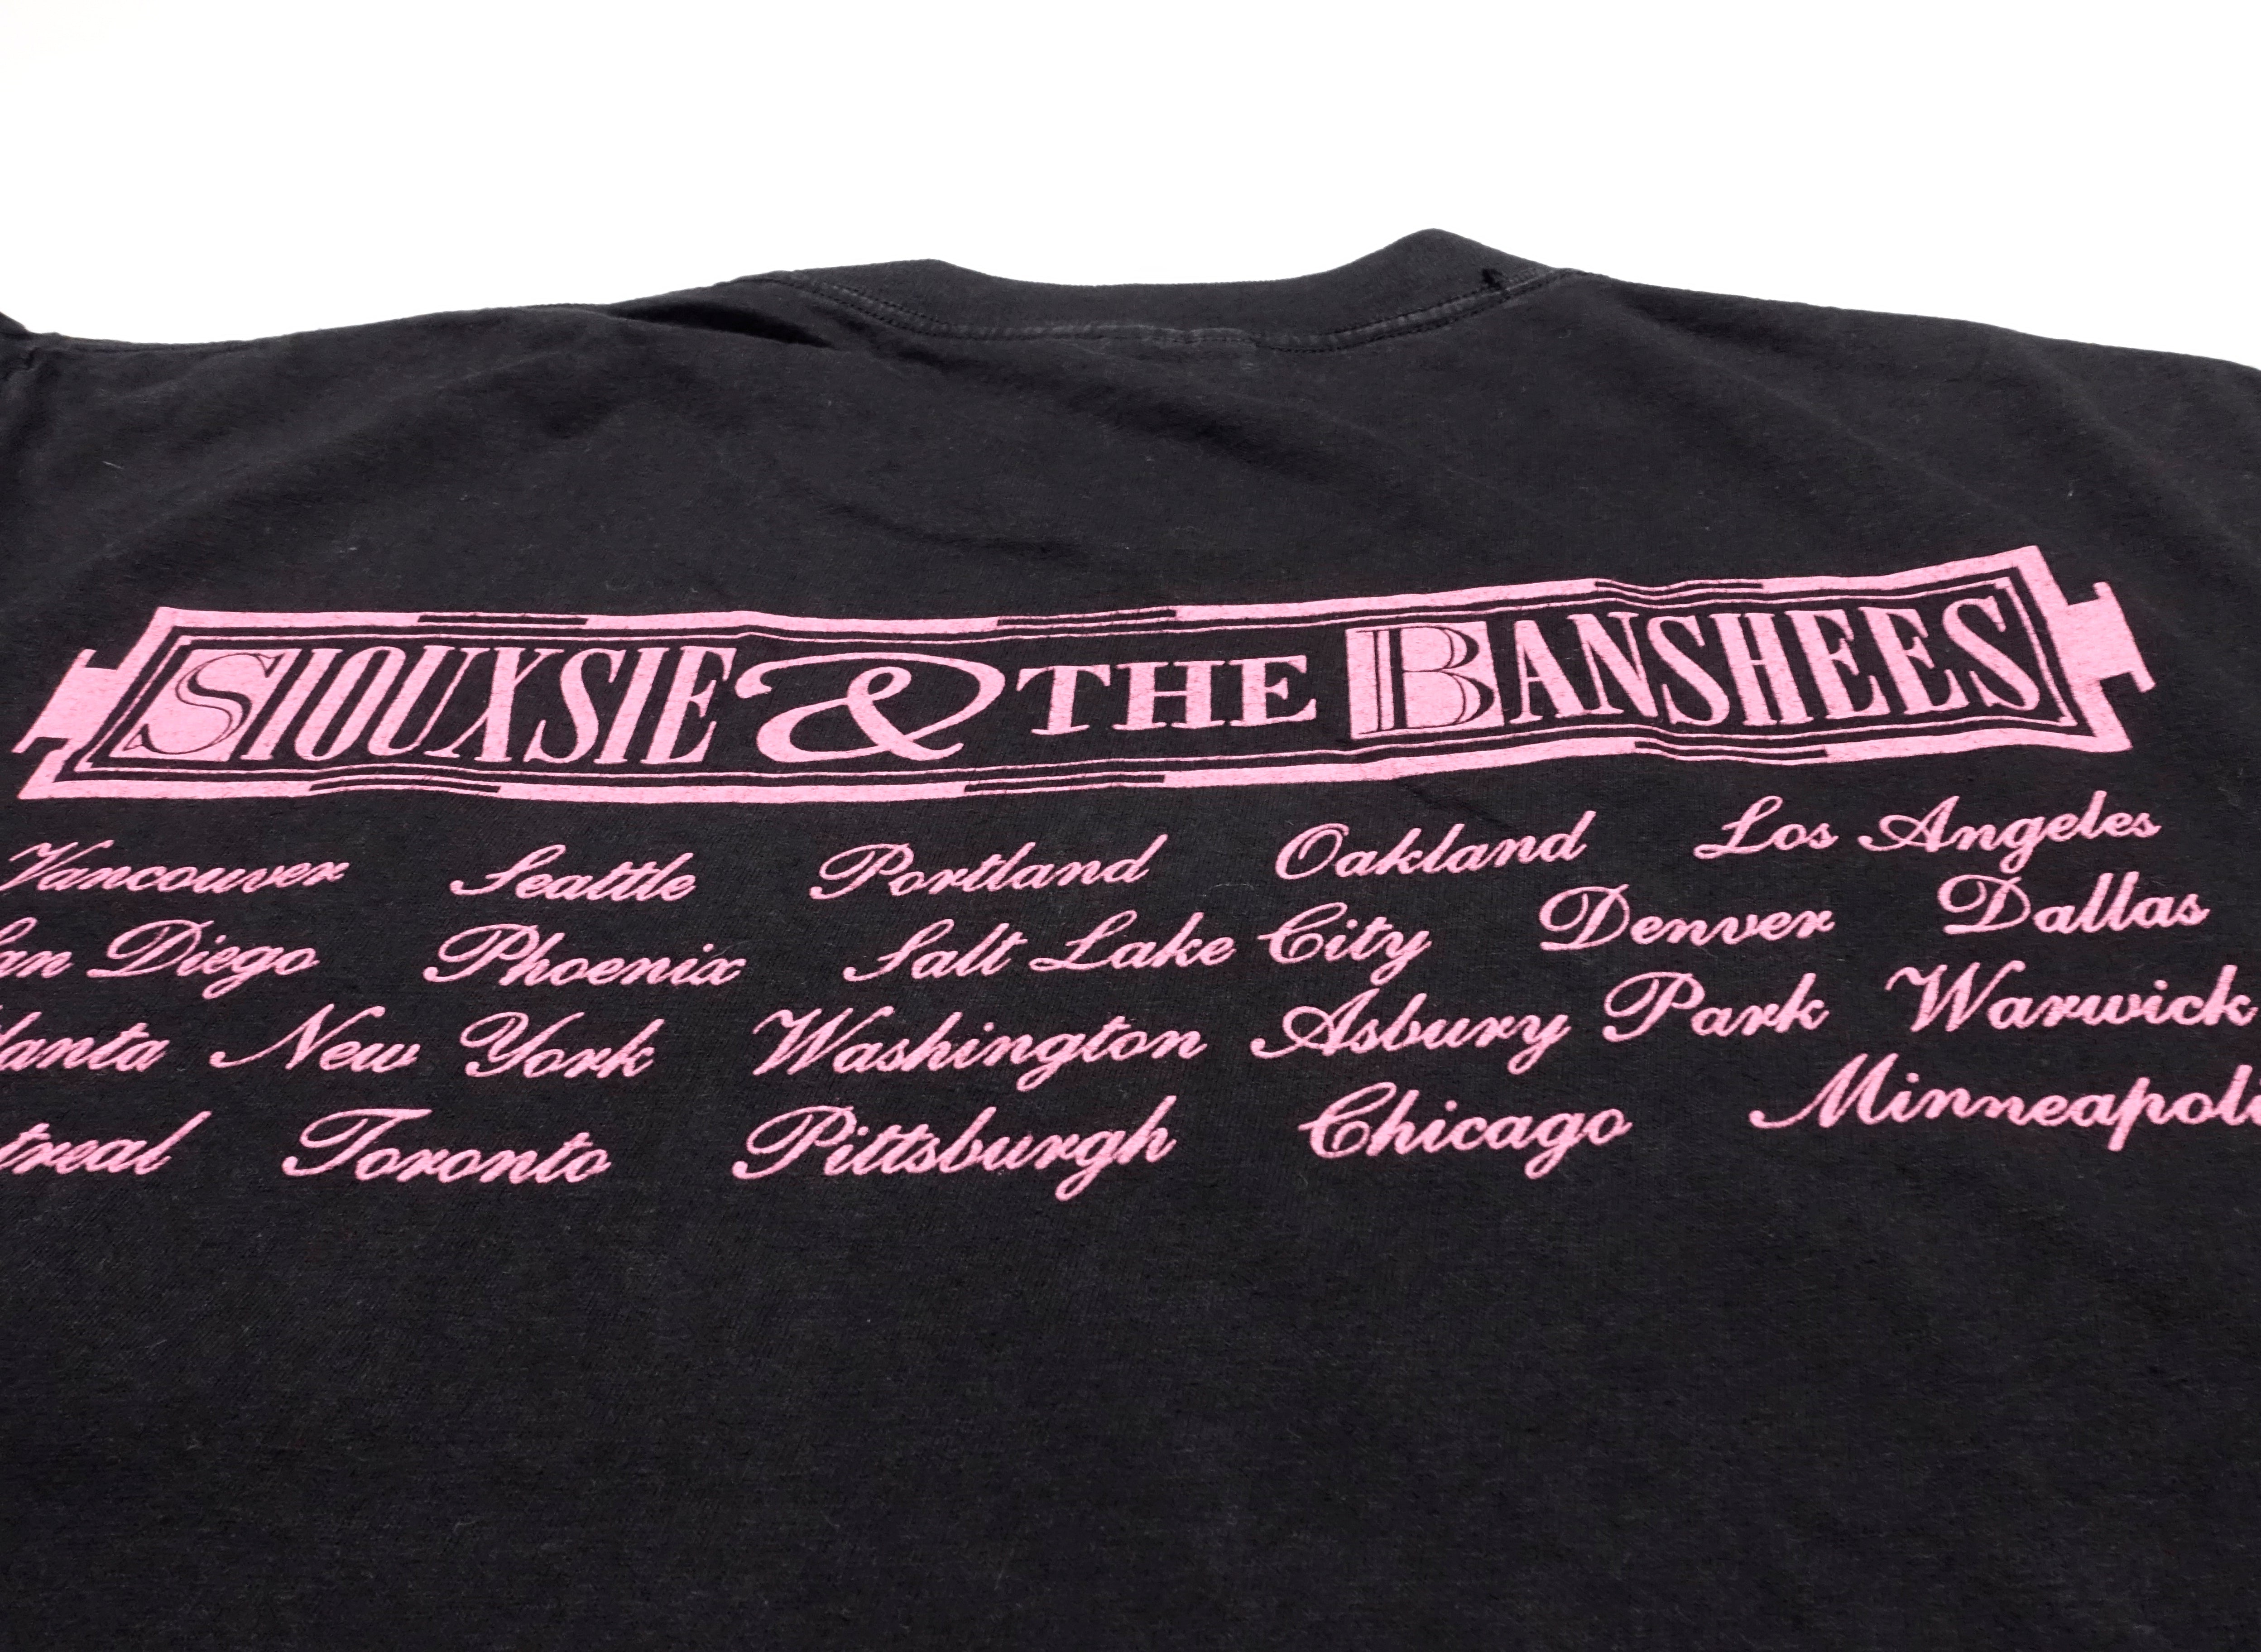 Siouxsie & The Banshees - Peepshow 1988 US Tour Shirt Size XL